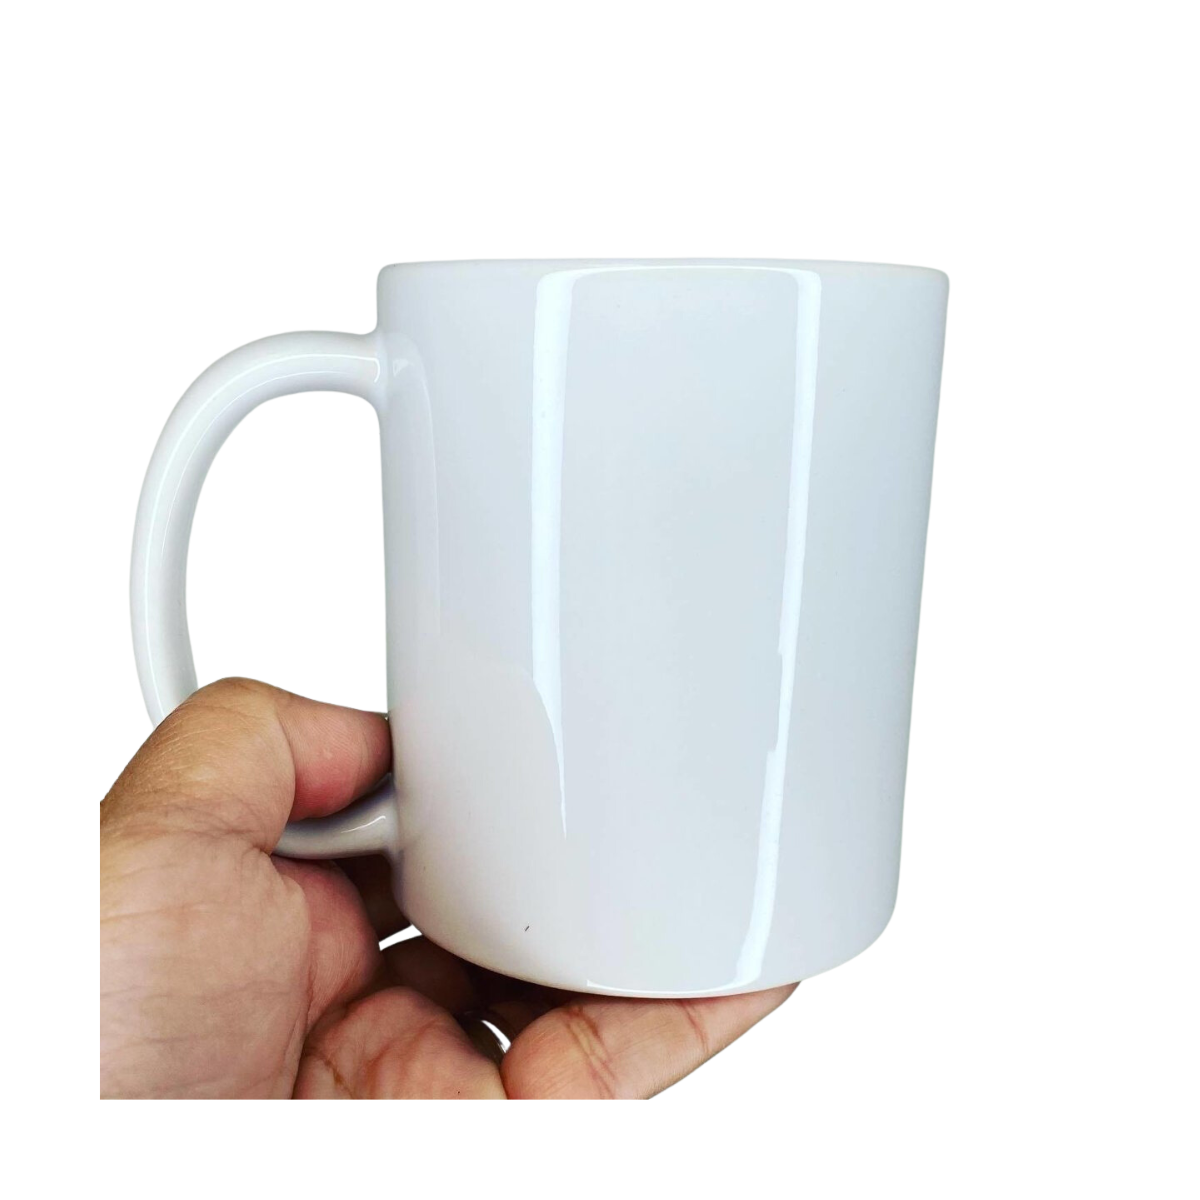 12 oz. Orca Latte Mug